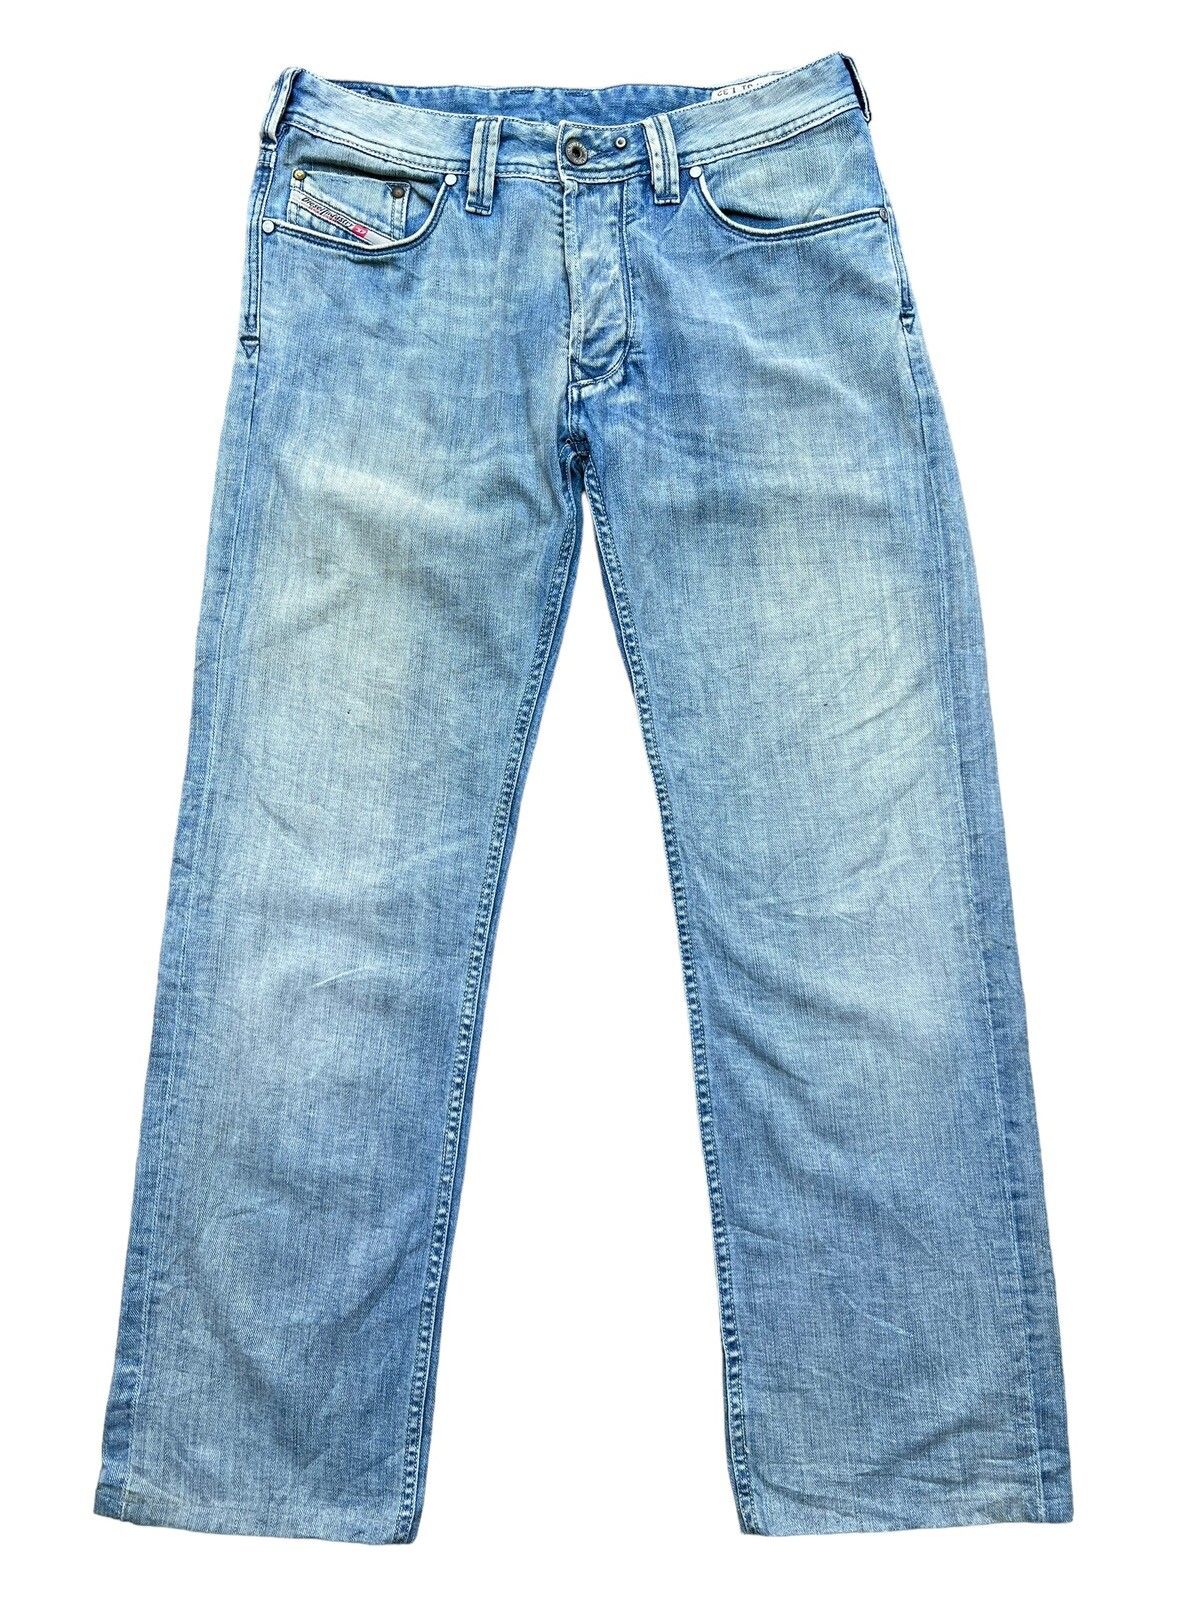 Vintage Distressed Diesel Industry Wide Jeans 32x30 - 2